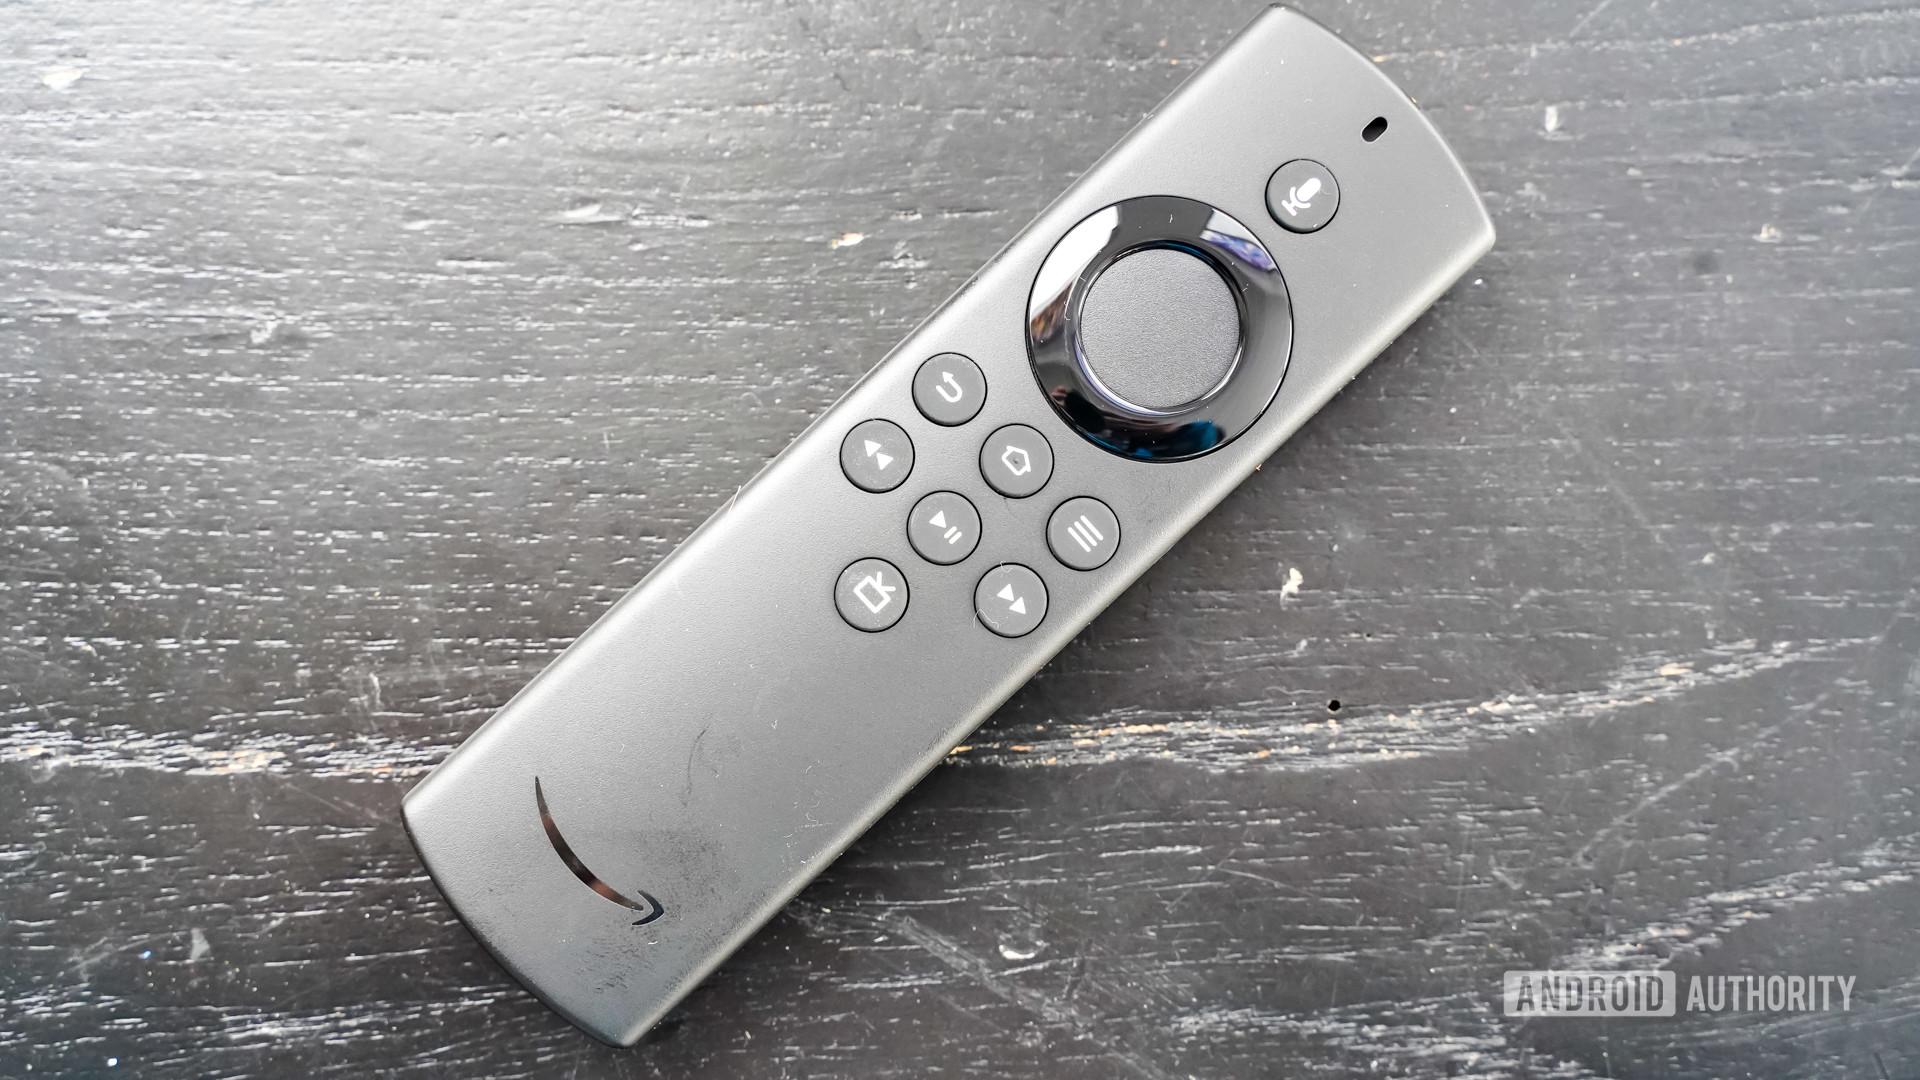 Amazon Fire TV Stick Lite remote